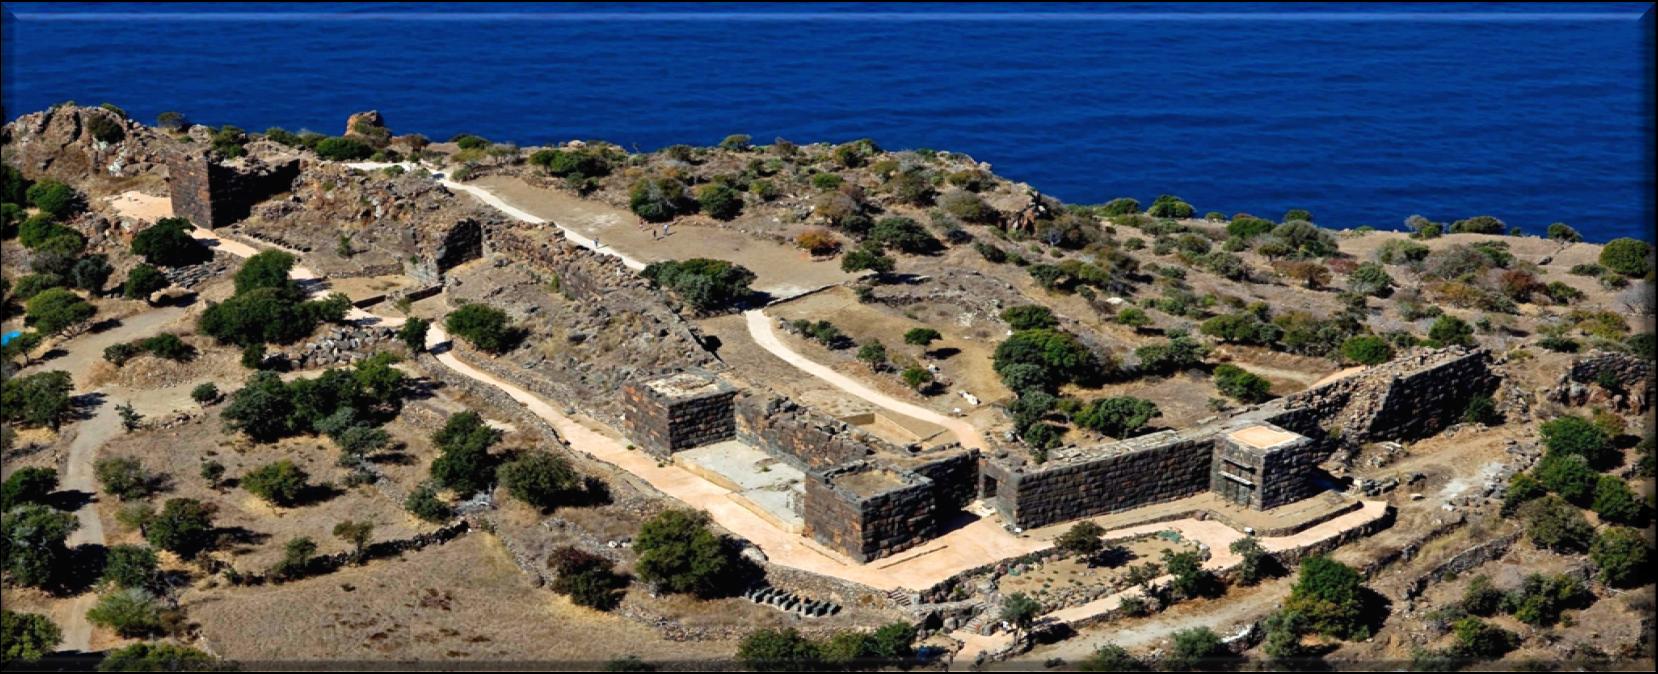 Σε πολιτιστική κυψέλη έχει μετατραπεί το αρχαίο τείχος Νισύρου